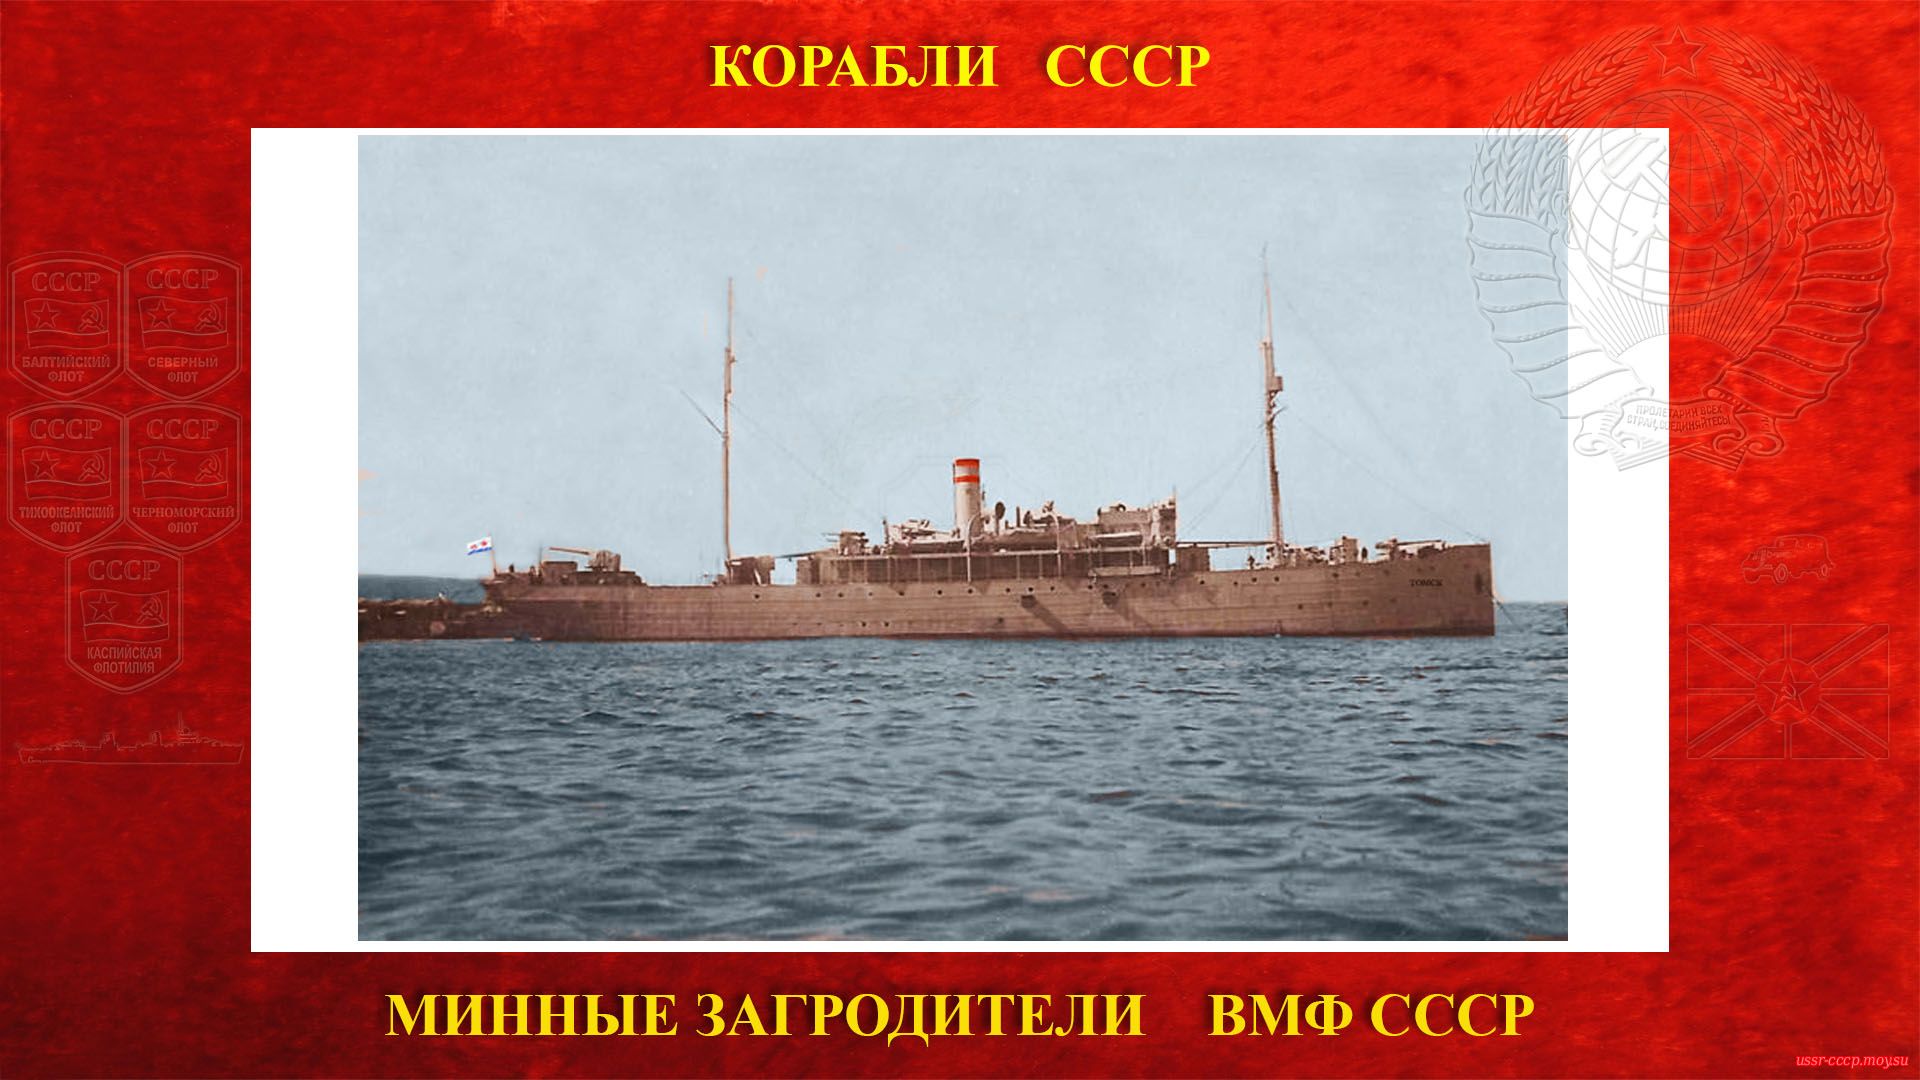 Томск — Советский минный заградитель ВМФ СССР (повествование)